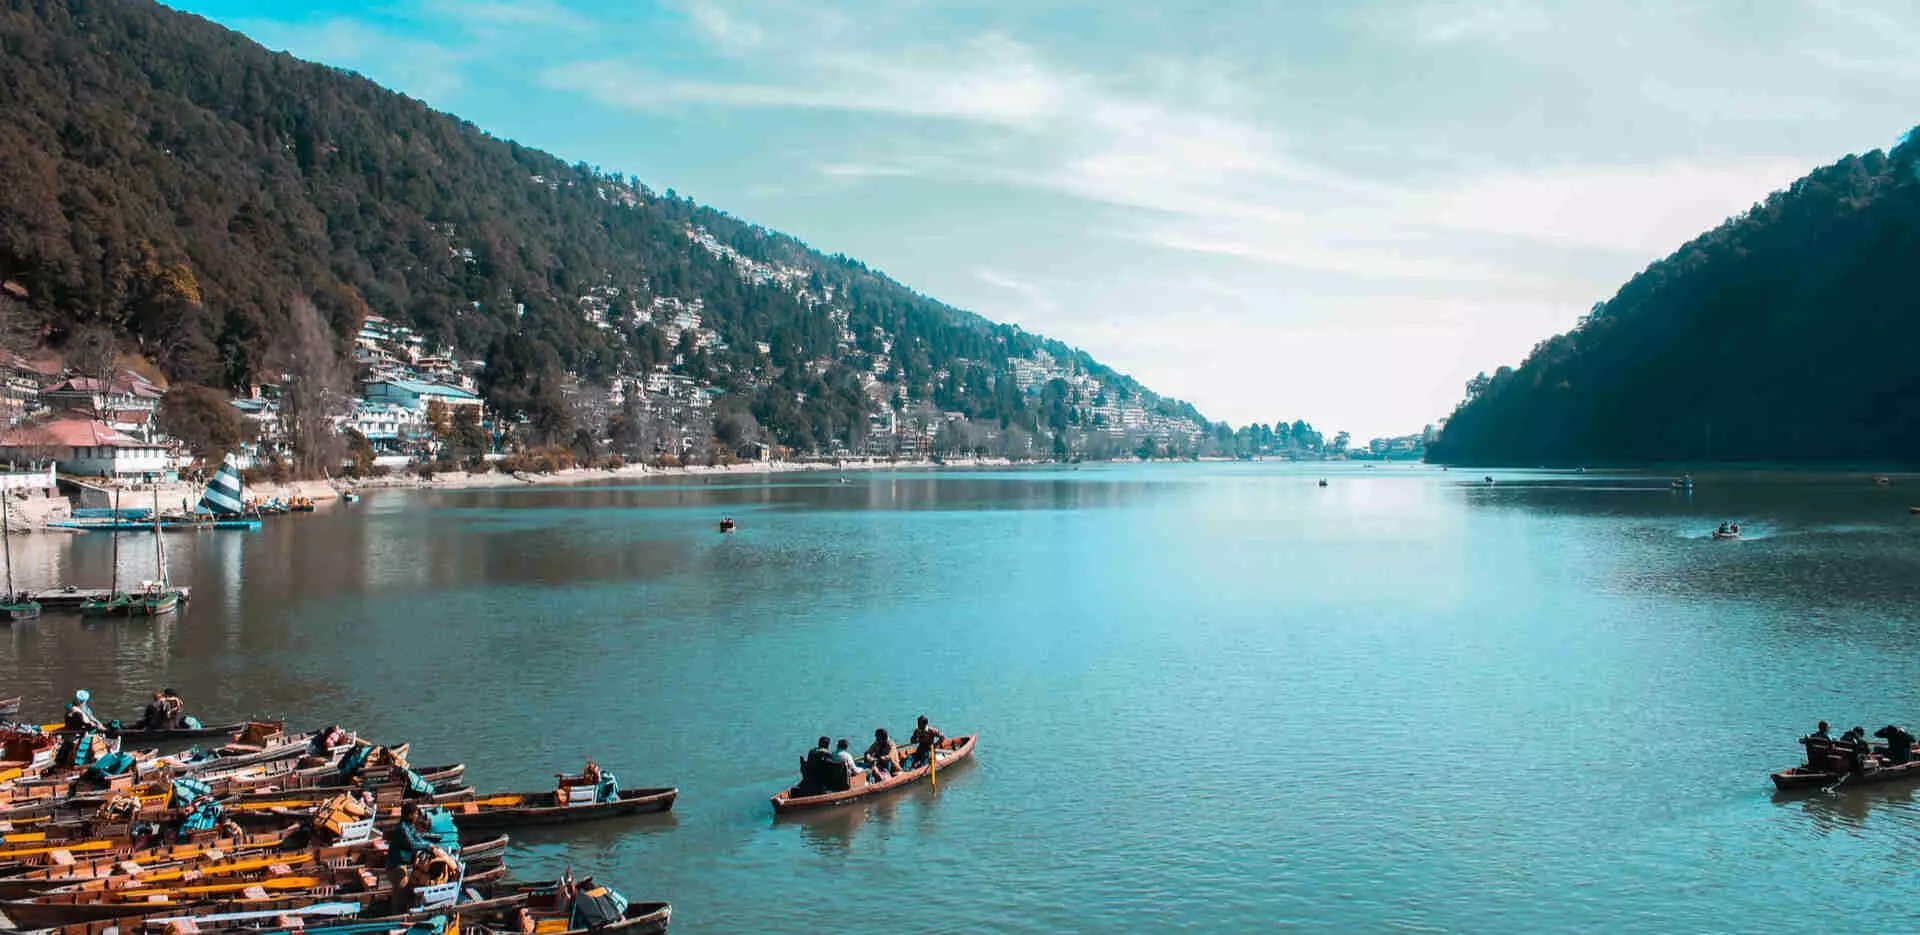 Nainital: इस साल बारिश की कमी के कारण पर्यटक भी नौकायन के लिए ज्यादा रुचि नहीं दिखा रहे